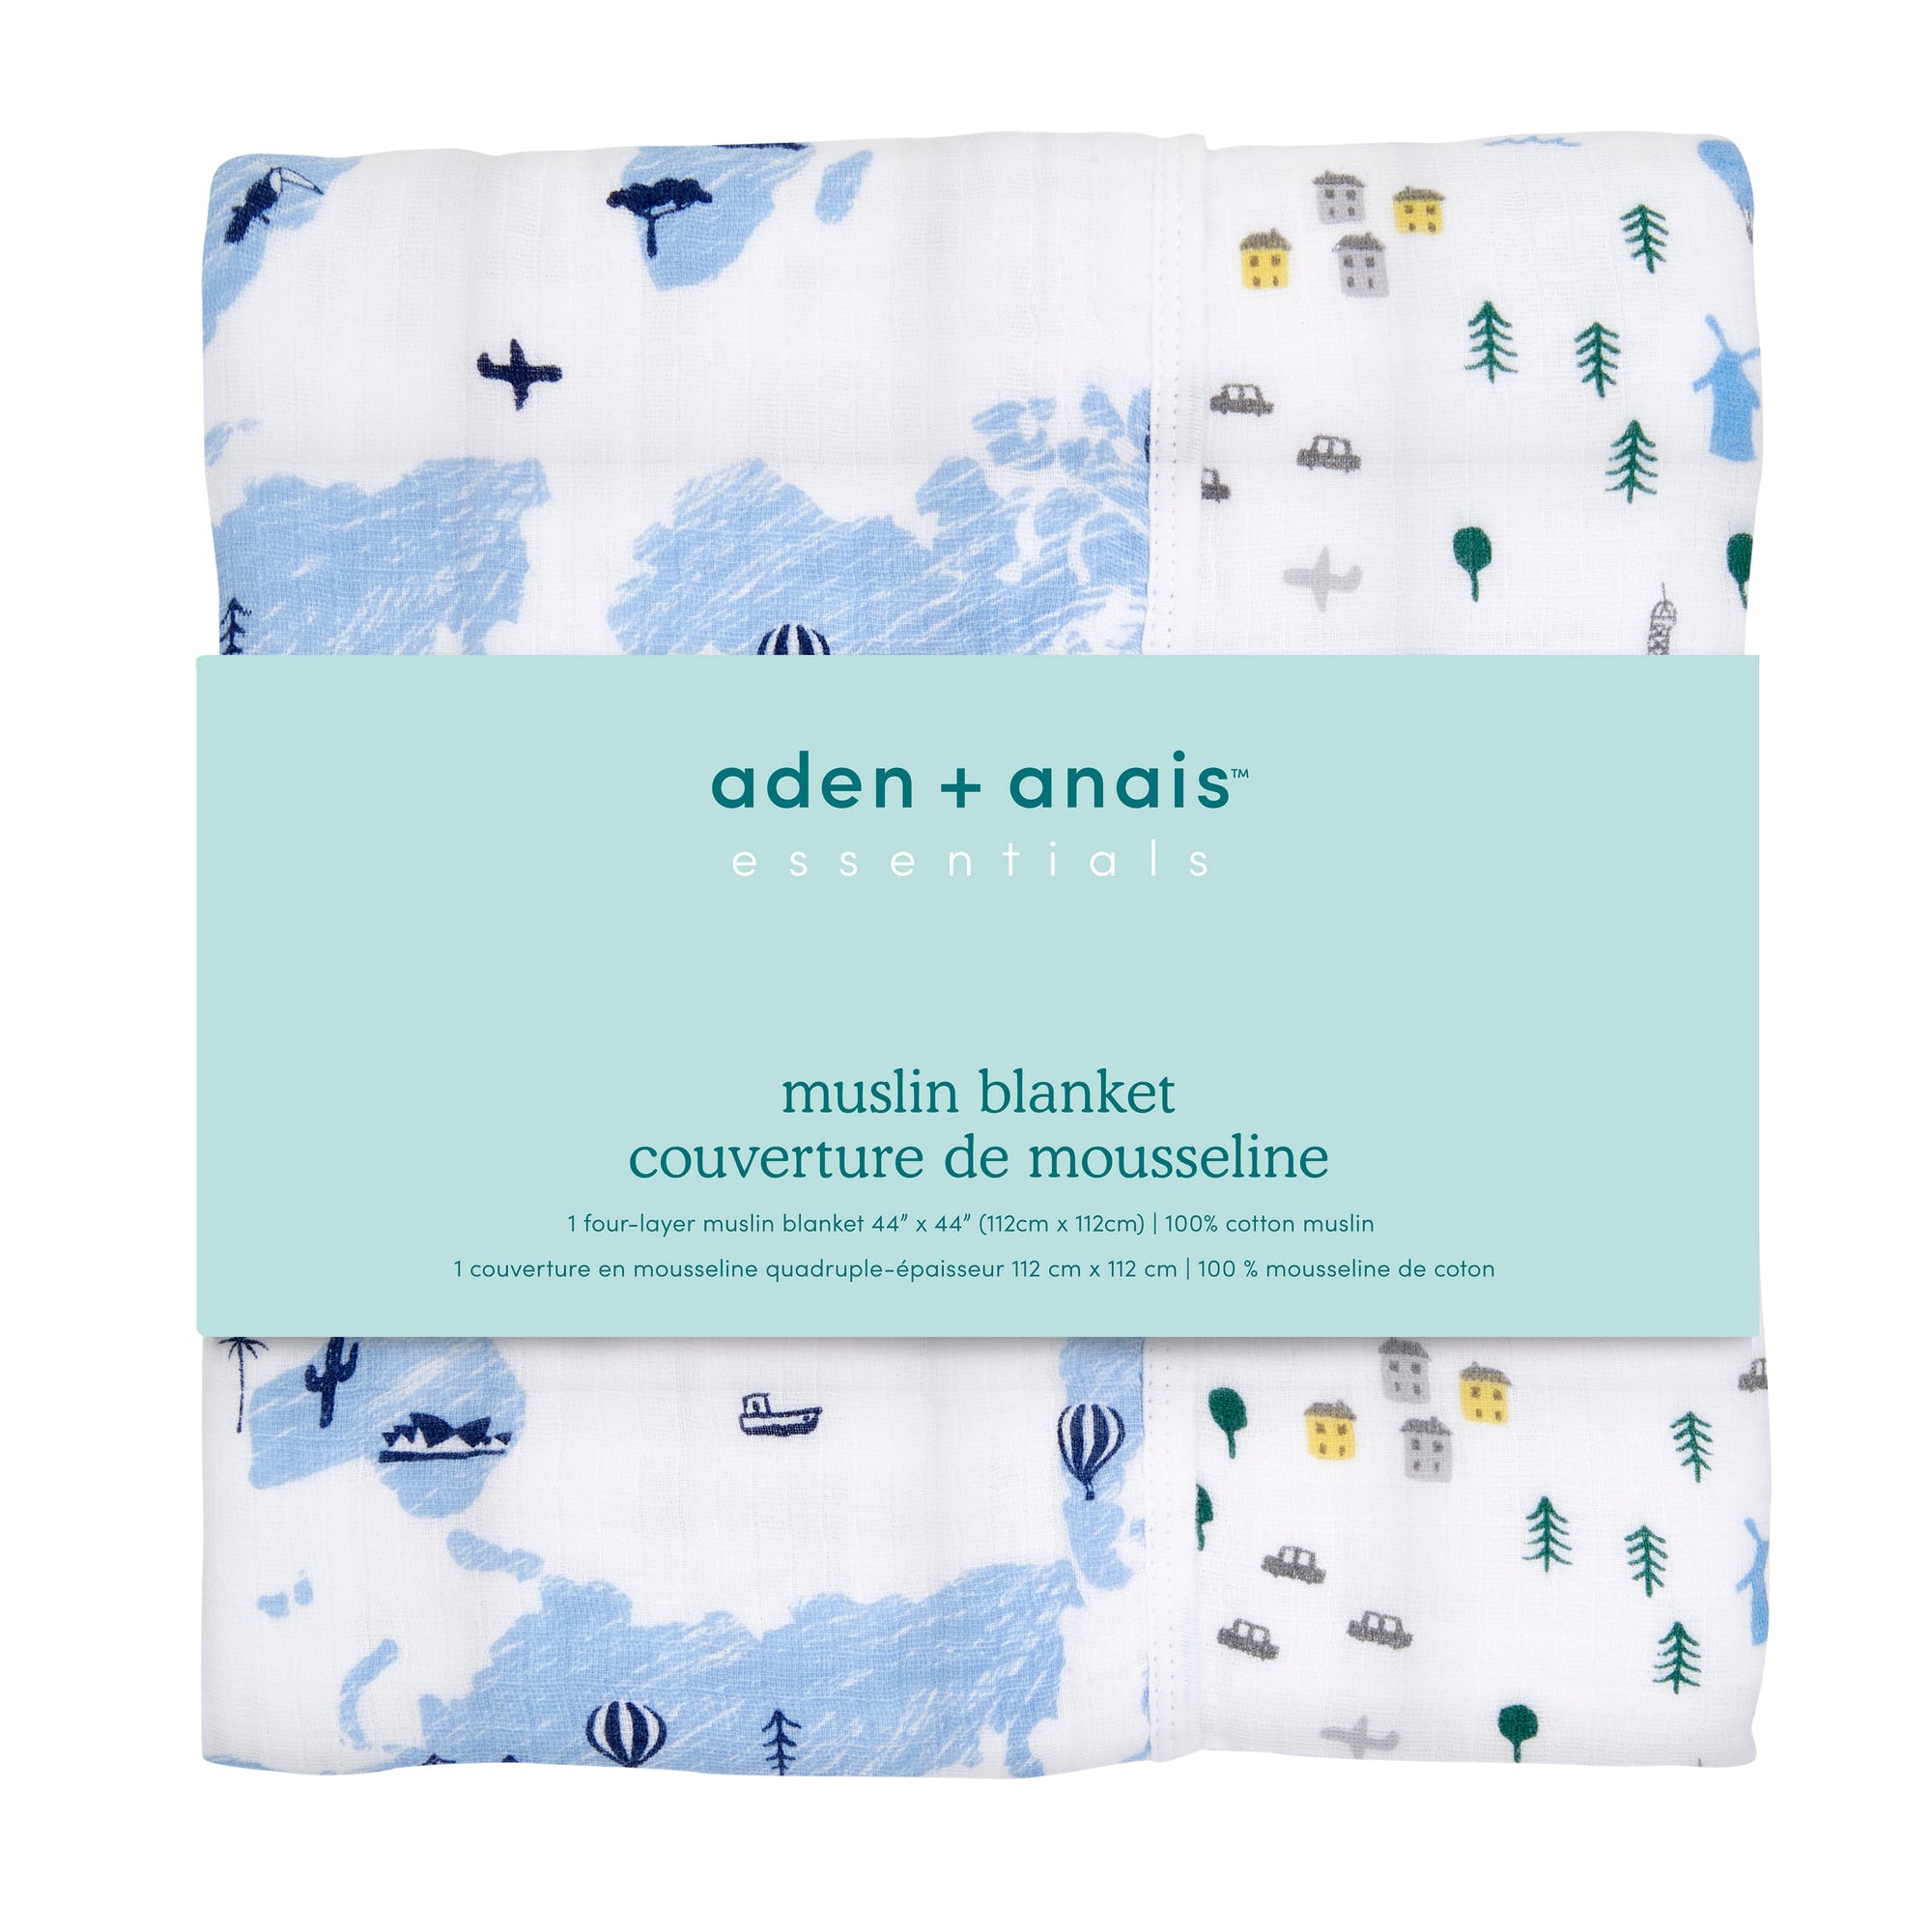 aden + anais essentials little big world wonderlust dream blanket